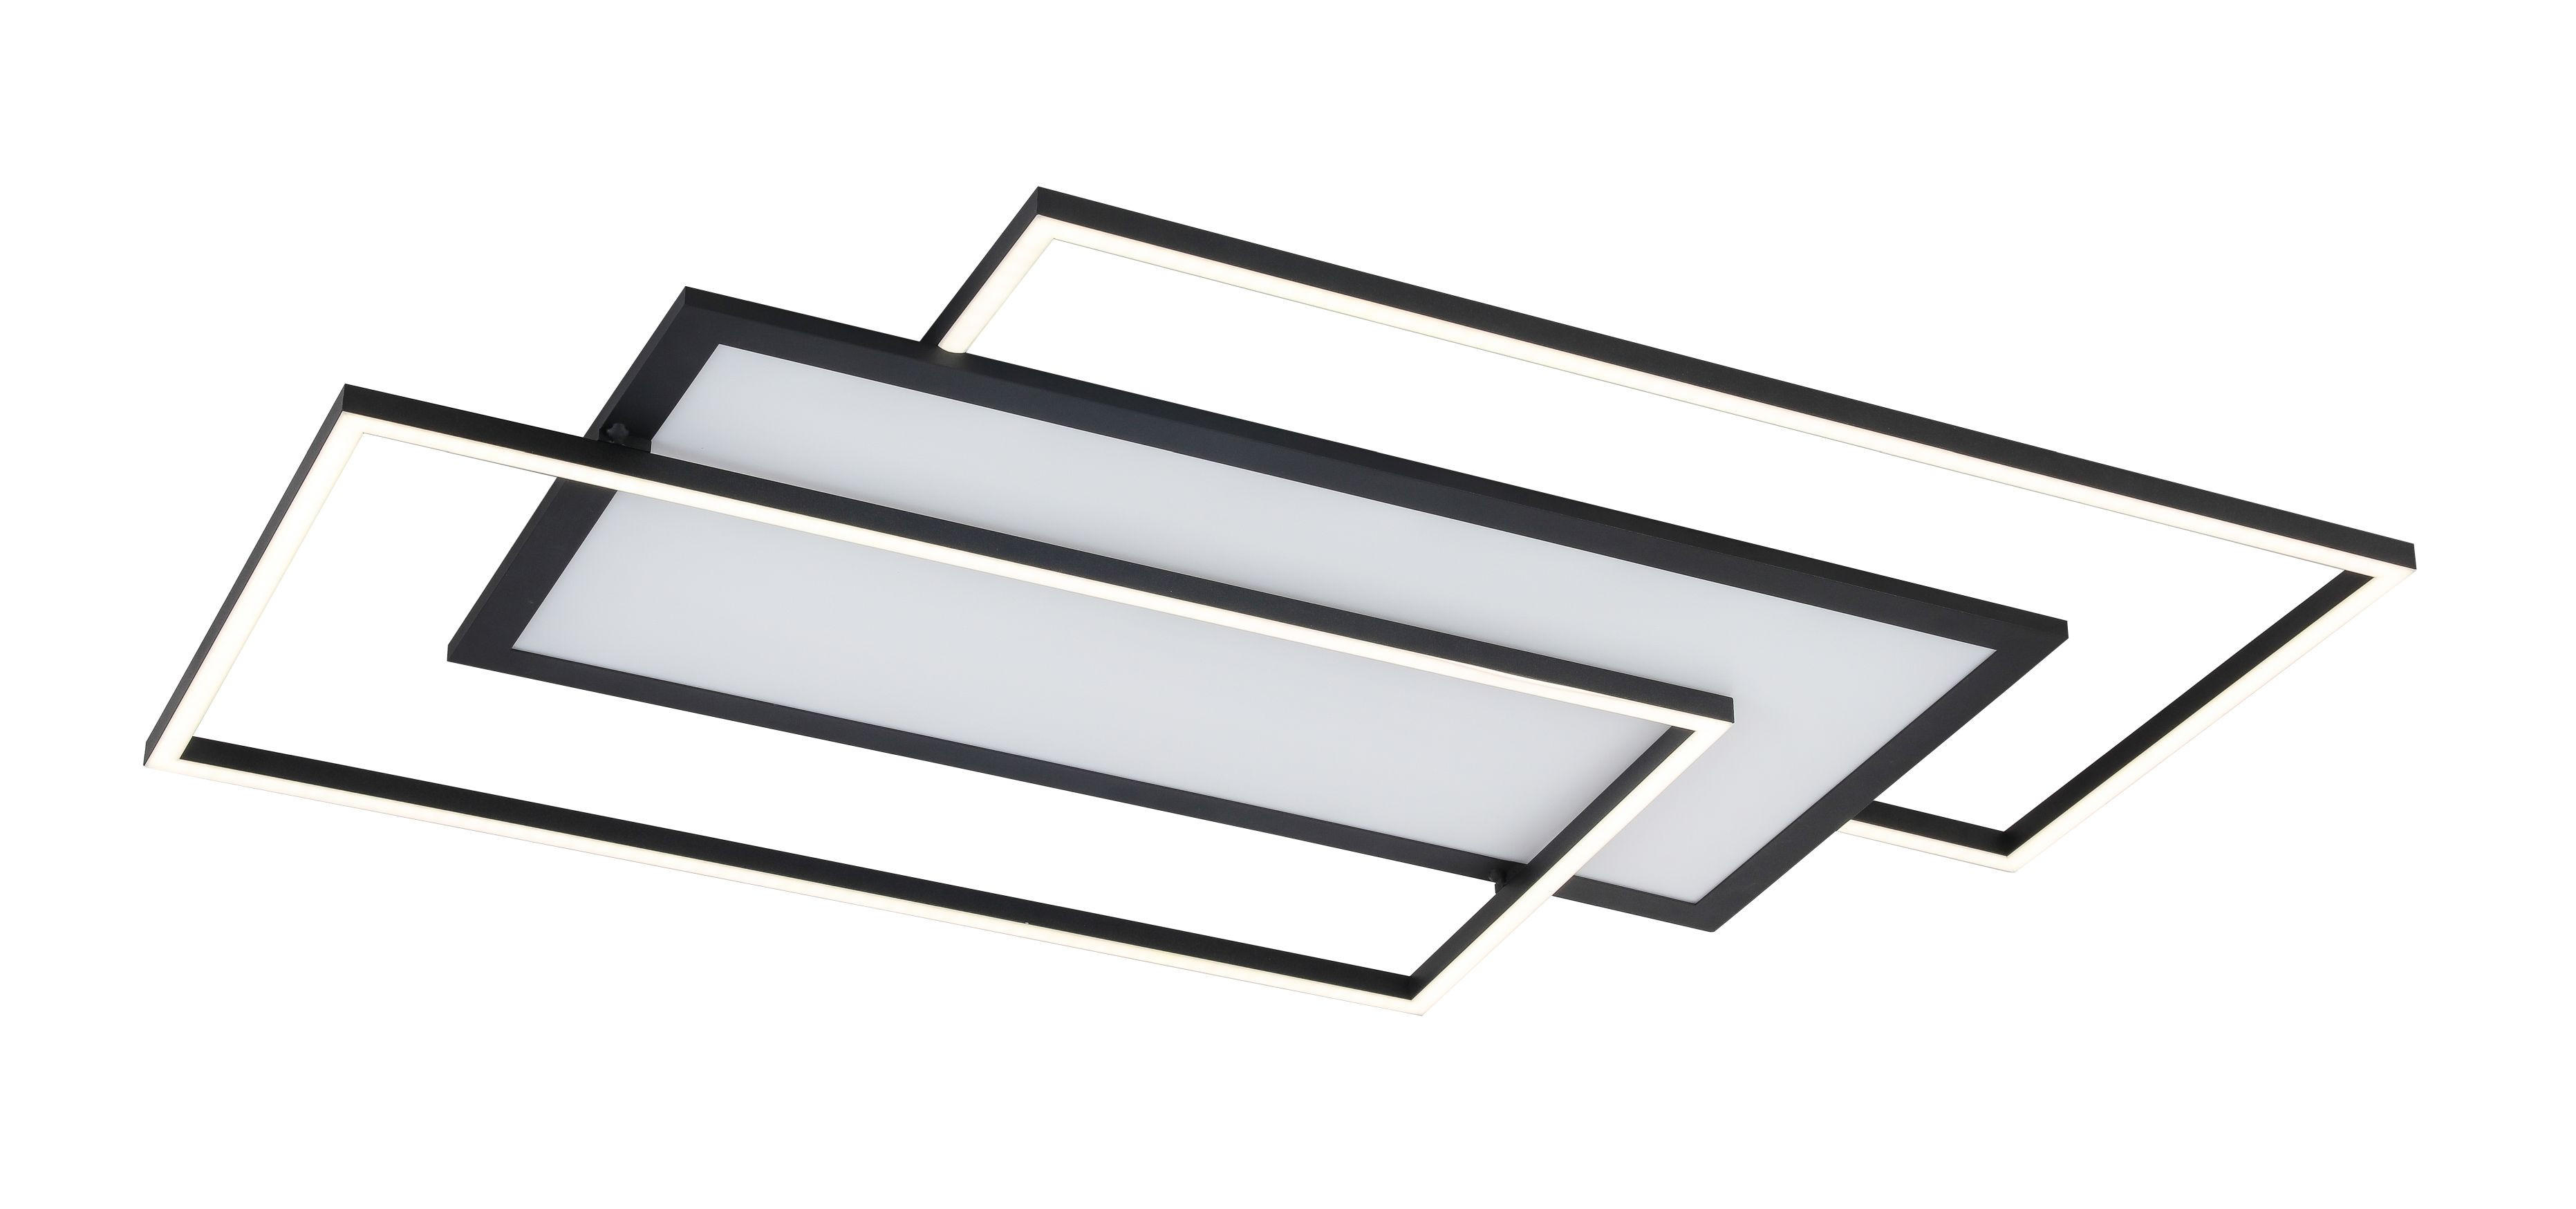 LED-DECKENLEUCHTE 80/50/6 cm   - Schwarz, Trend, Kunststoff/Metall (80/50/6cm) - Novel